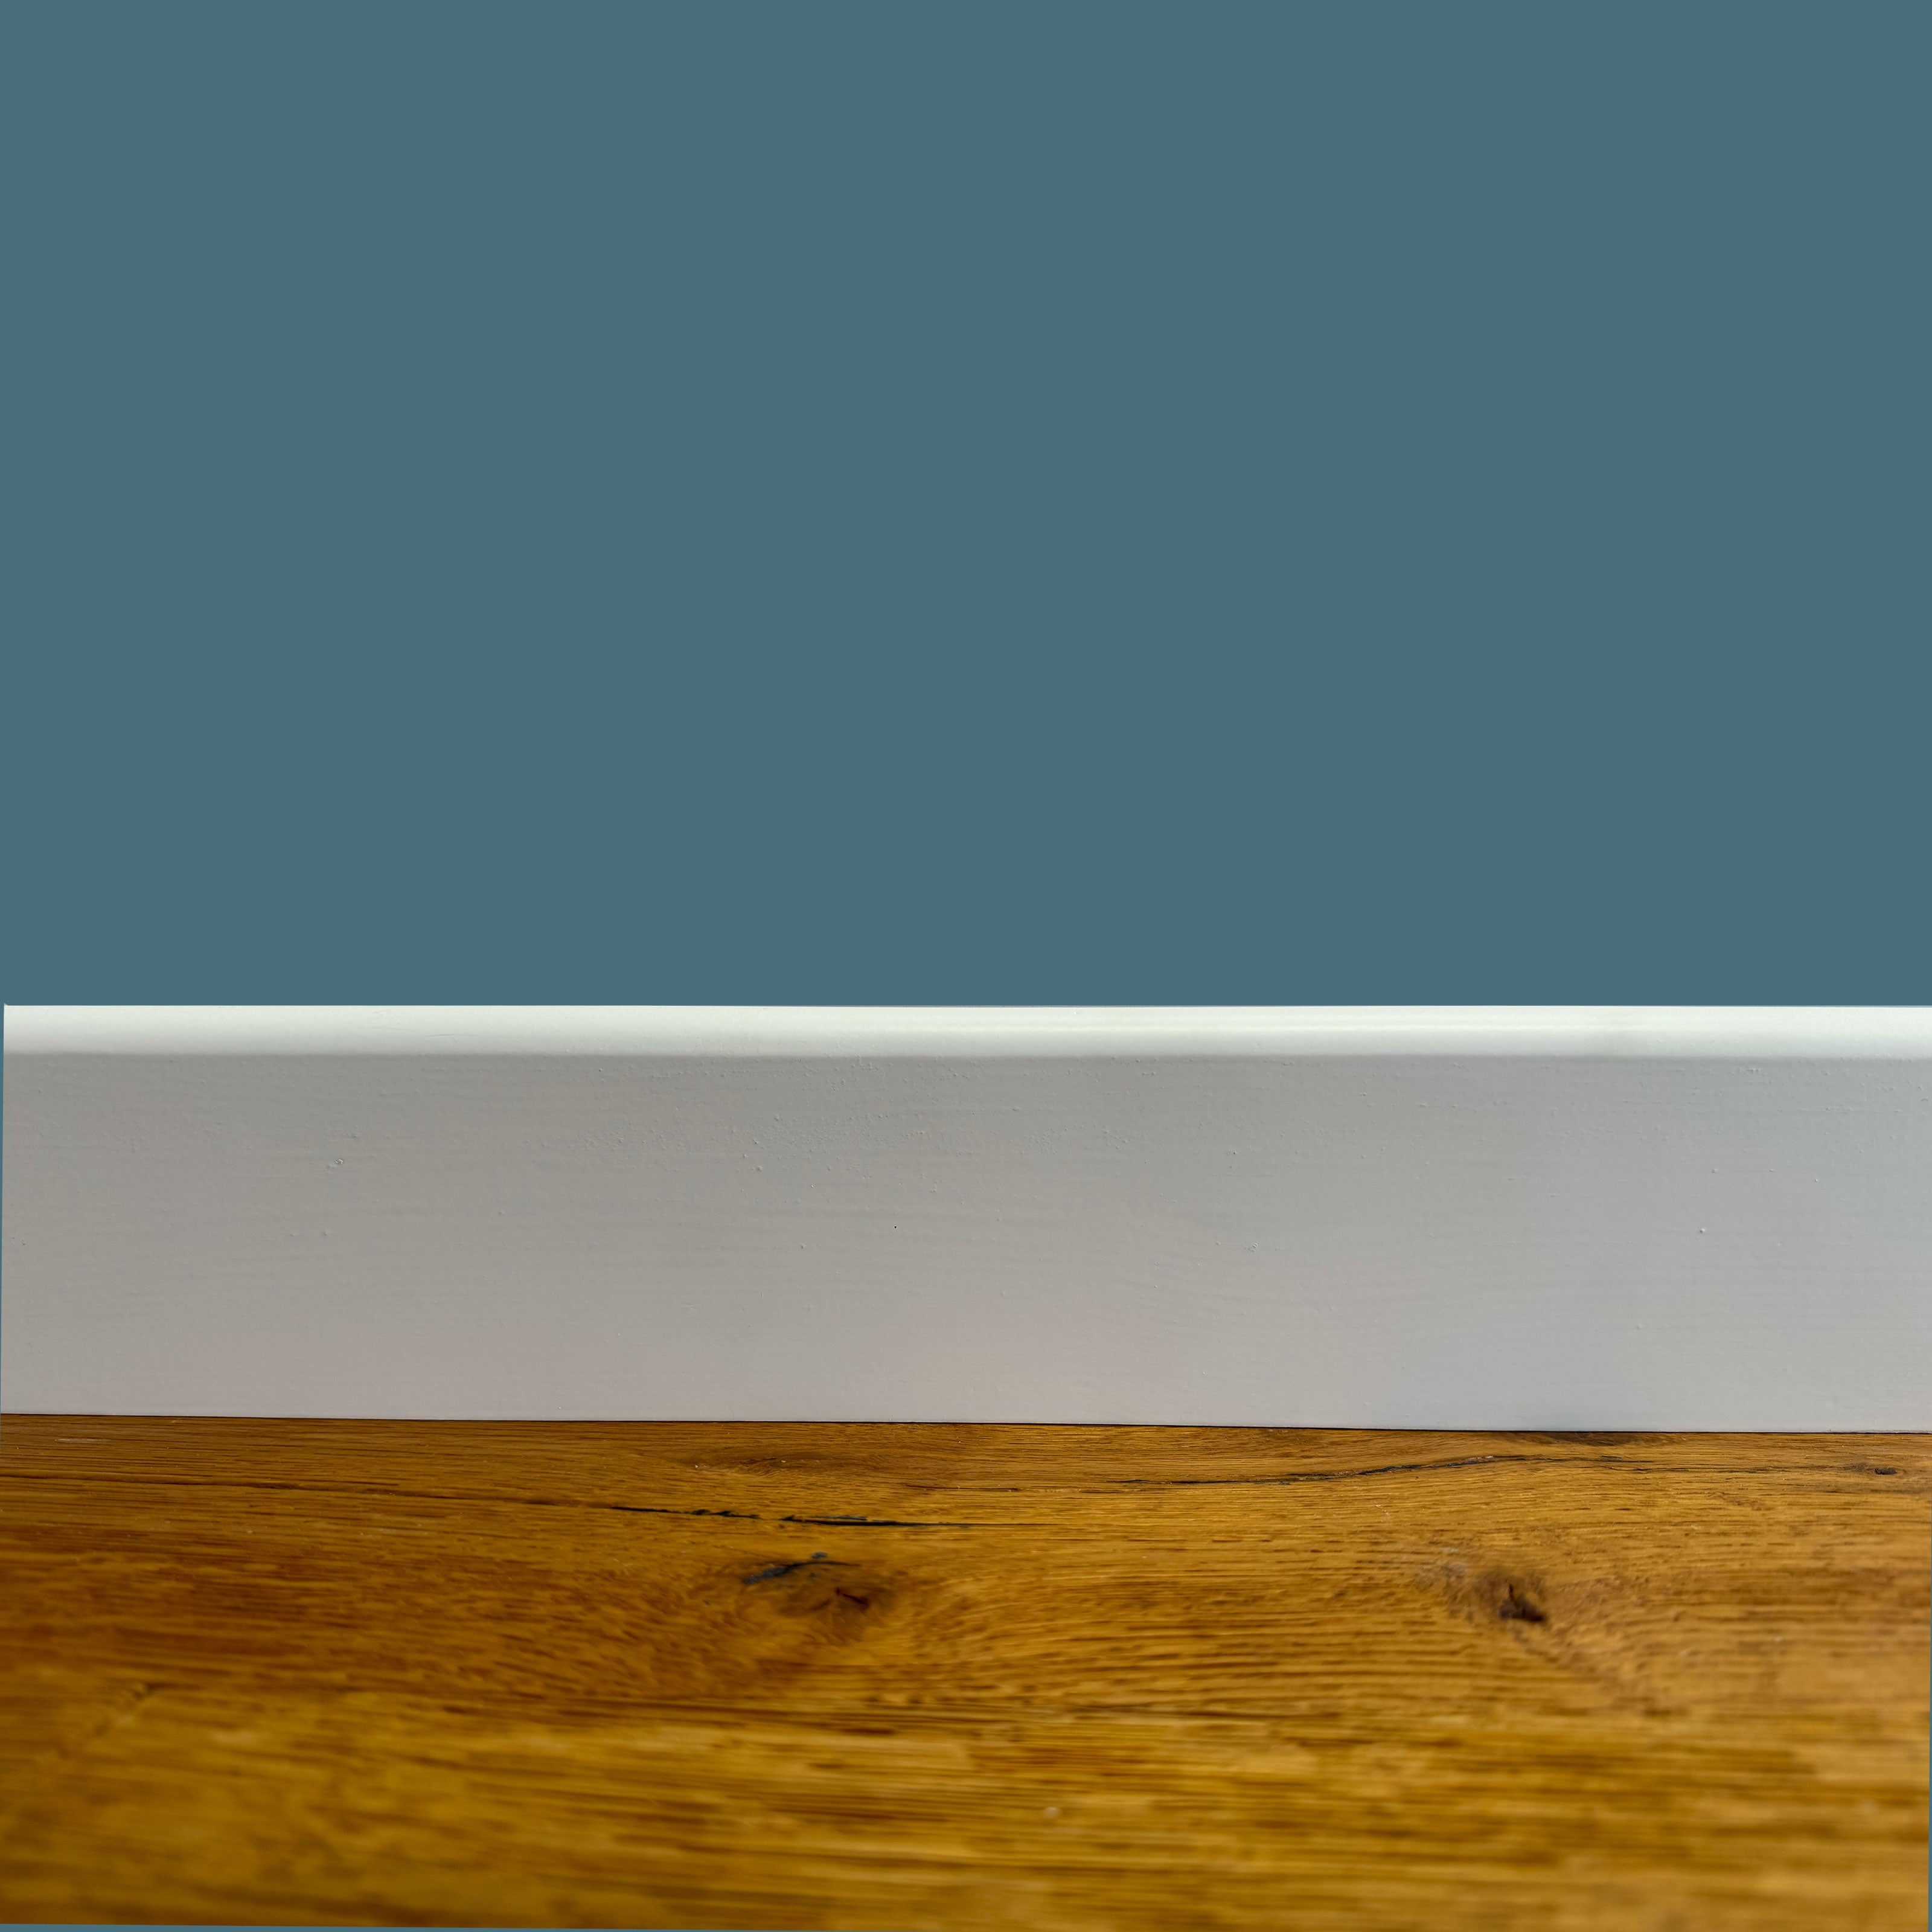 Battiscopa PREMIUM in legno MASSELLO BC 91x15 laccato bianco liscio (prezzo al metro) - Eternal Parquet